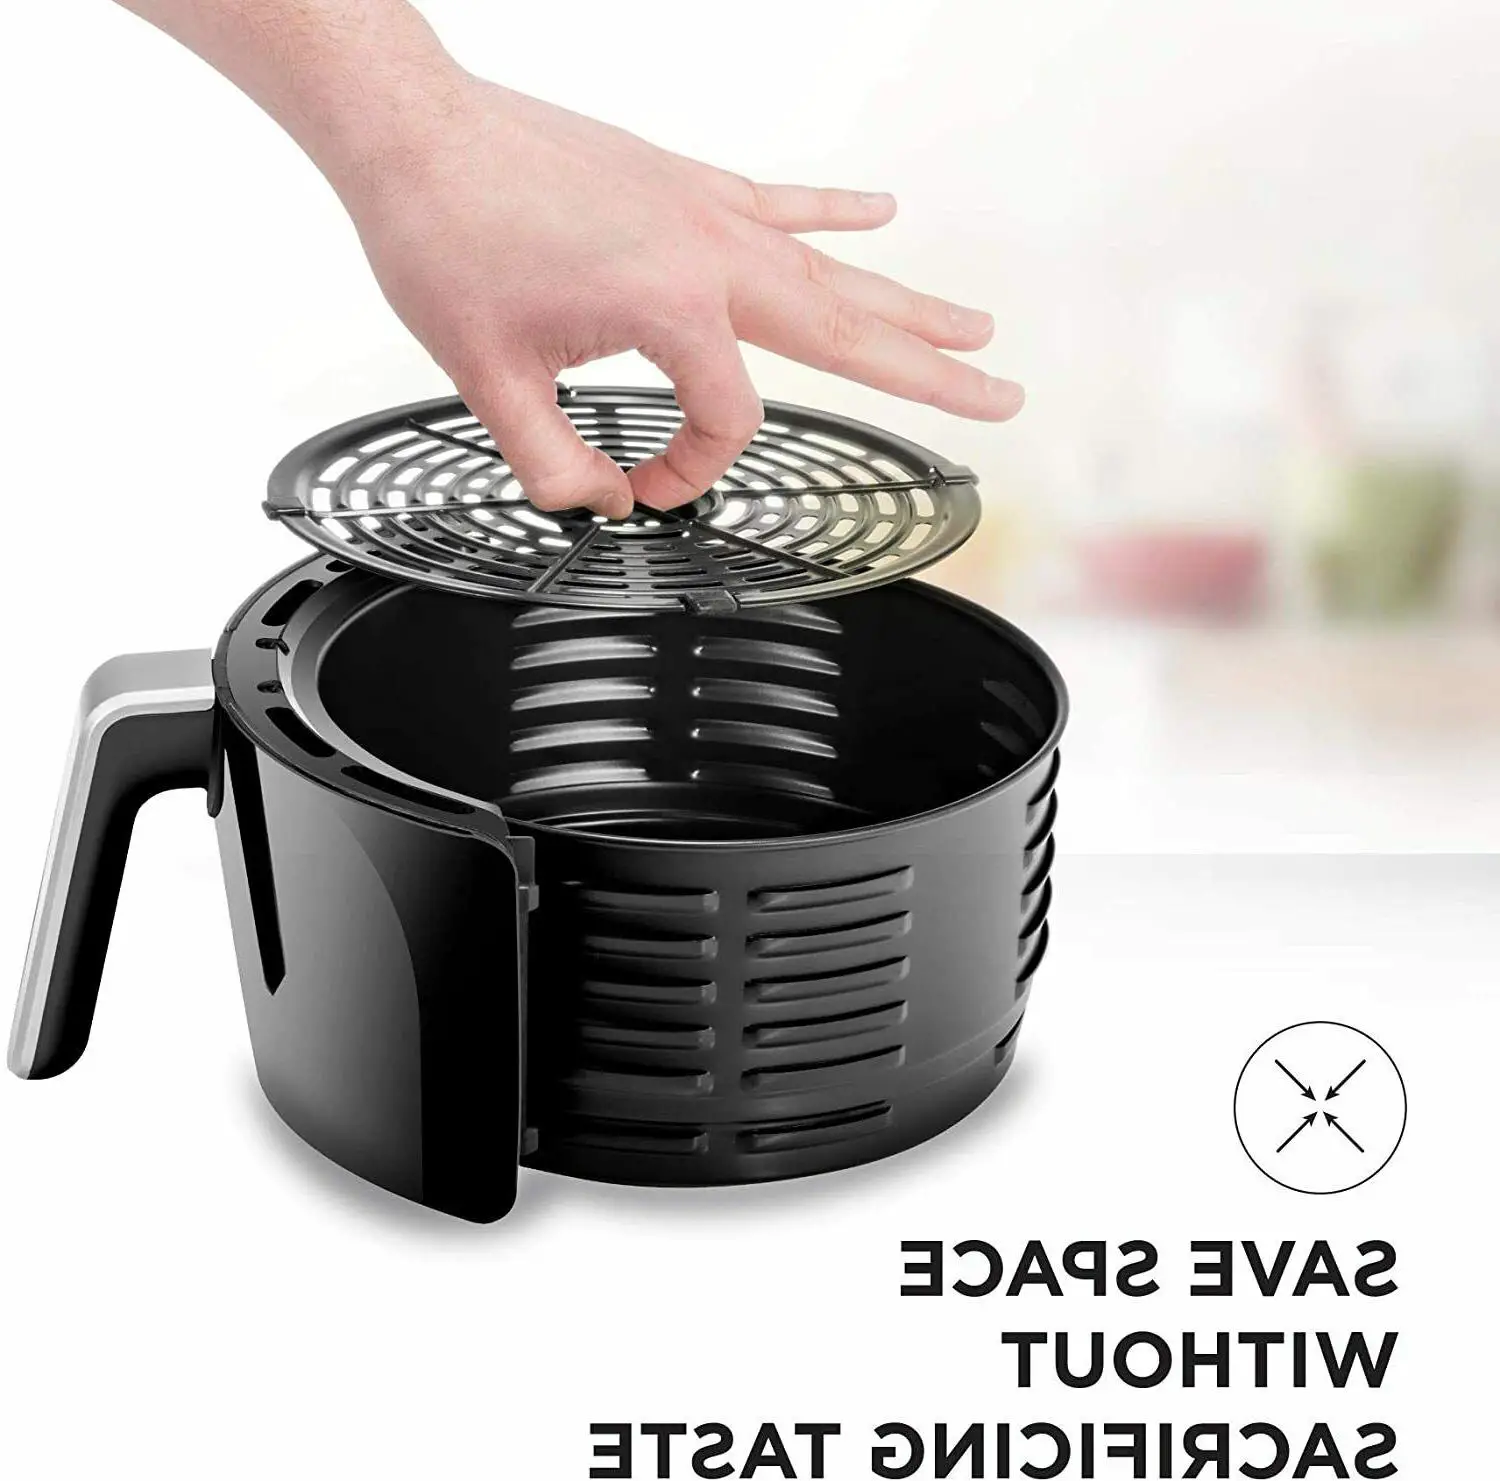 2L Air Fryer Dishwasher Safe Basket Chefman TurboFry